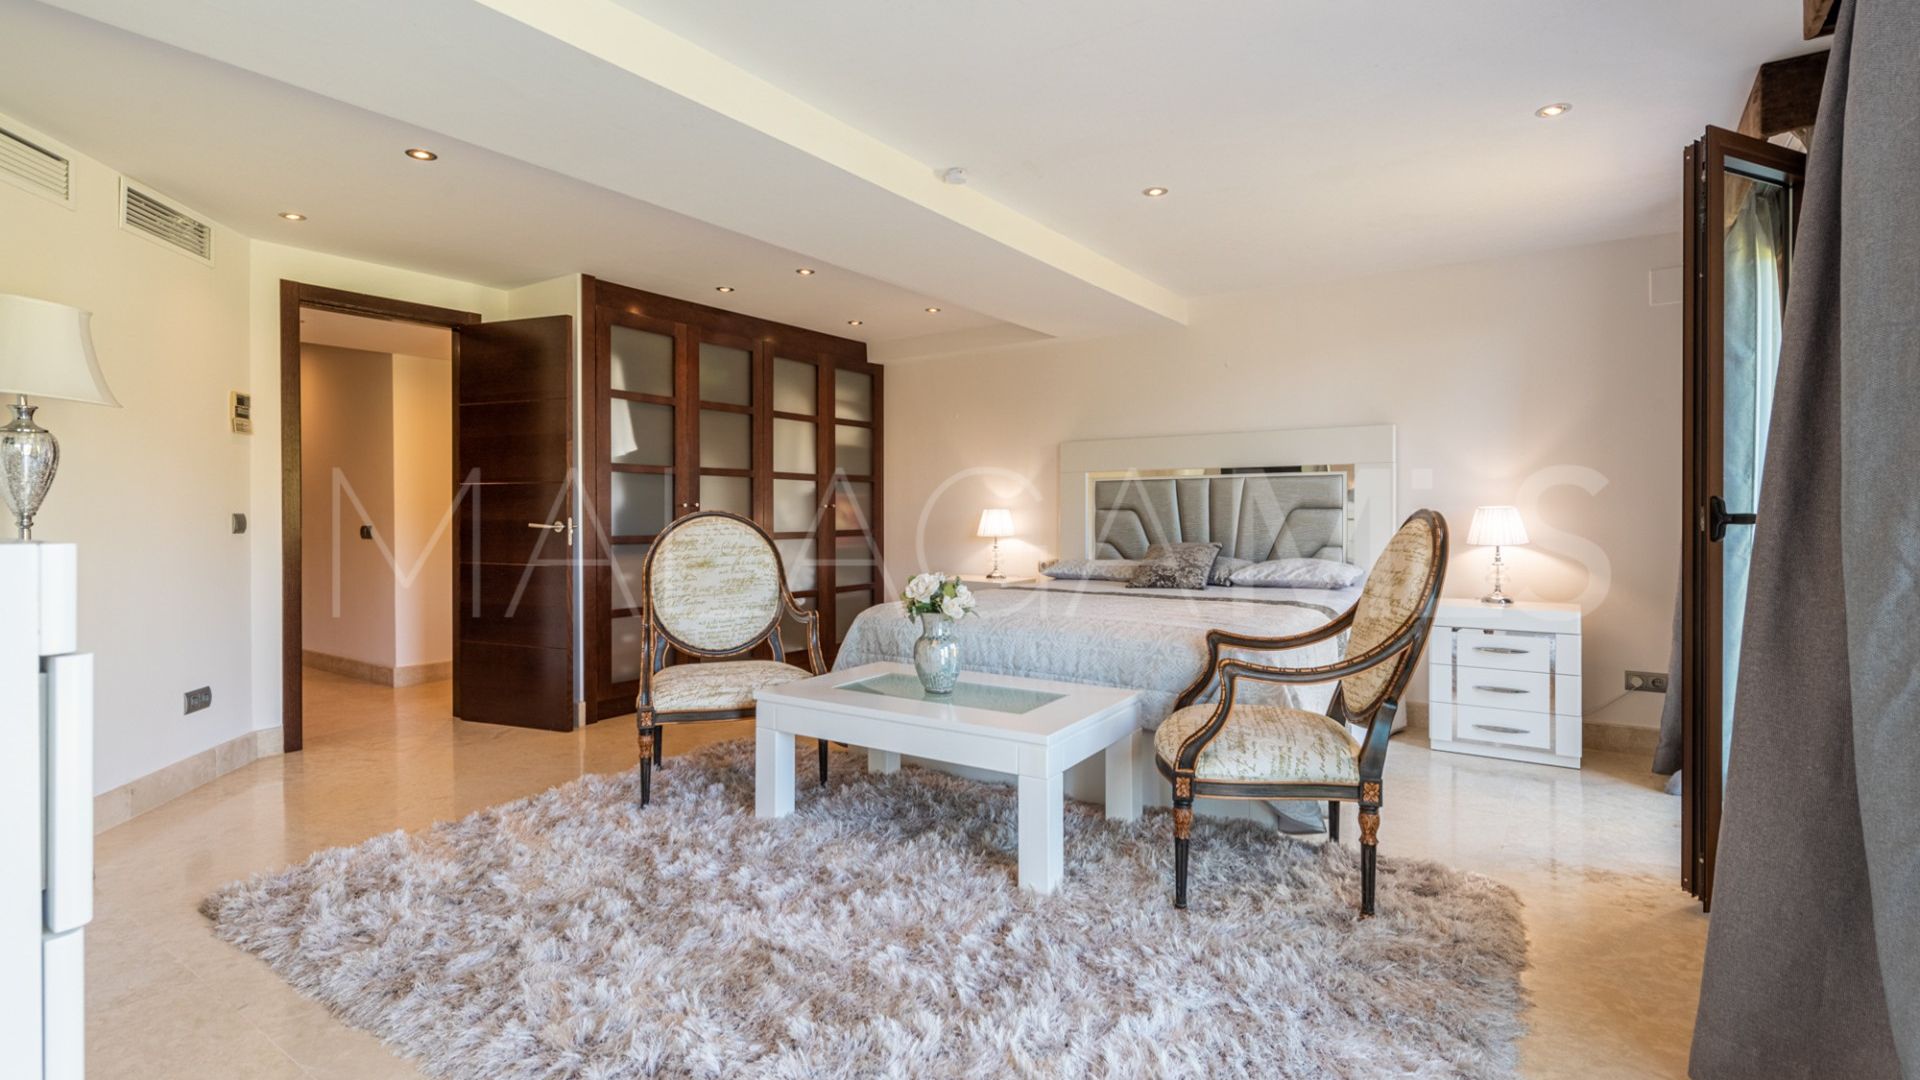 6 bedrooms villa in Las Brisas for sale